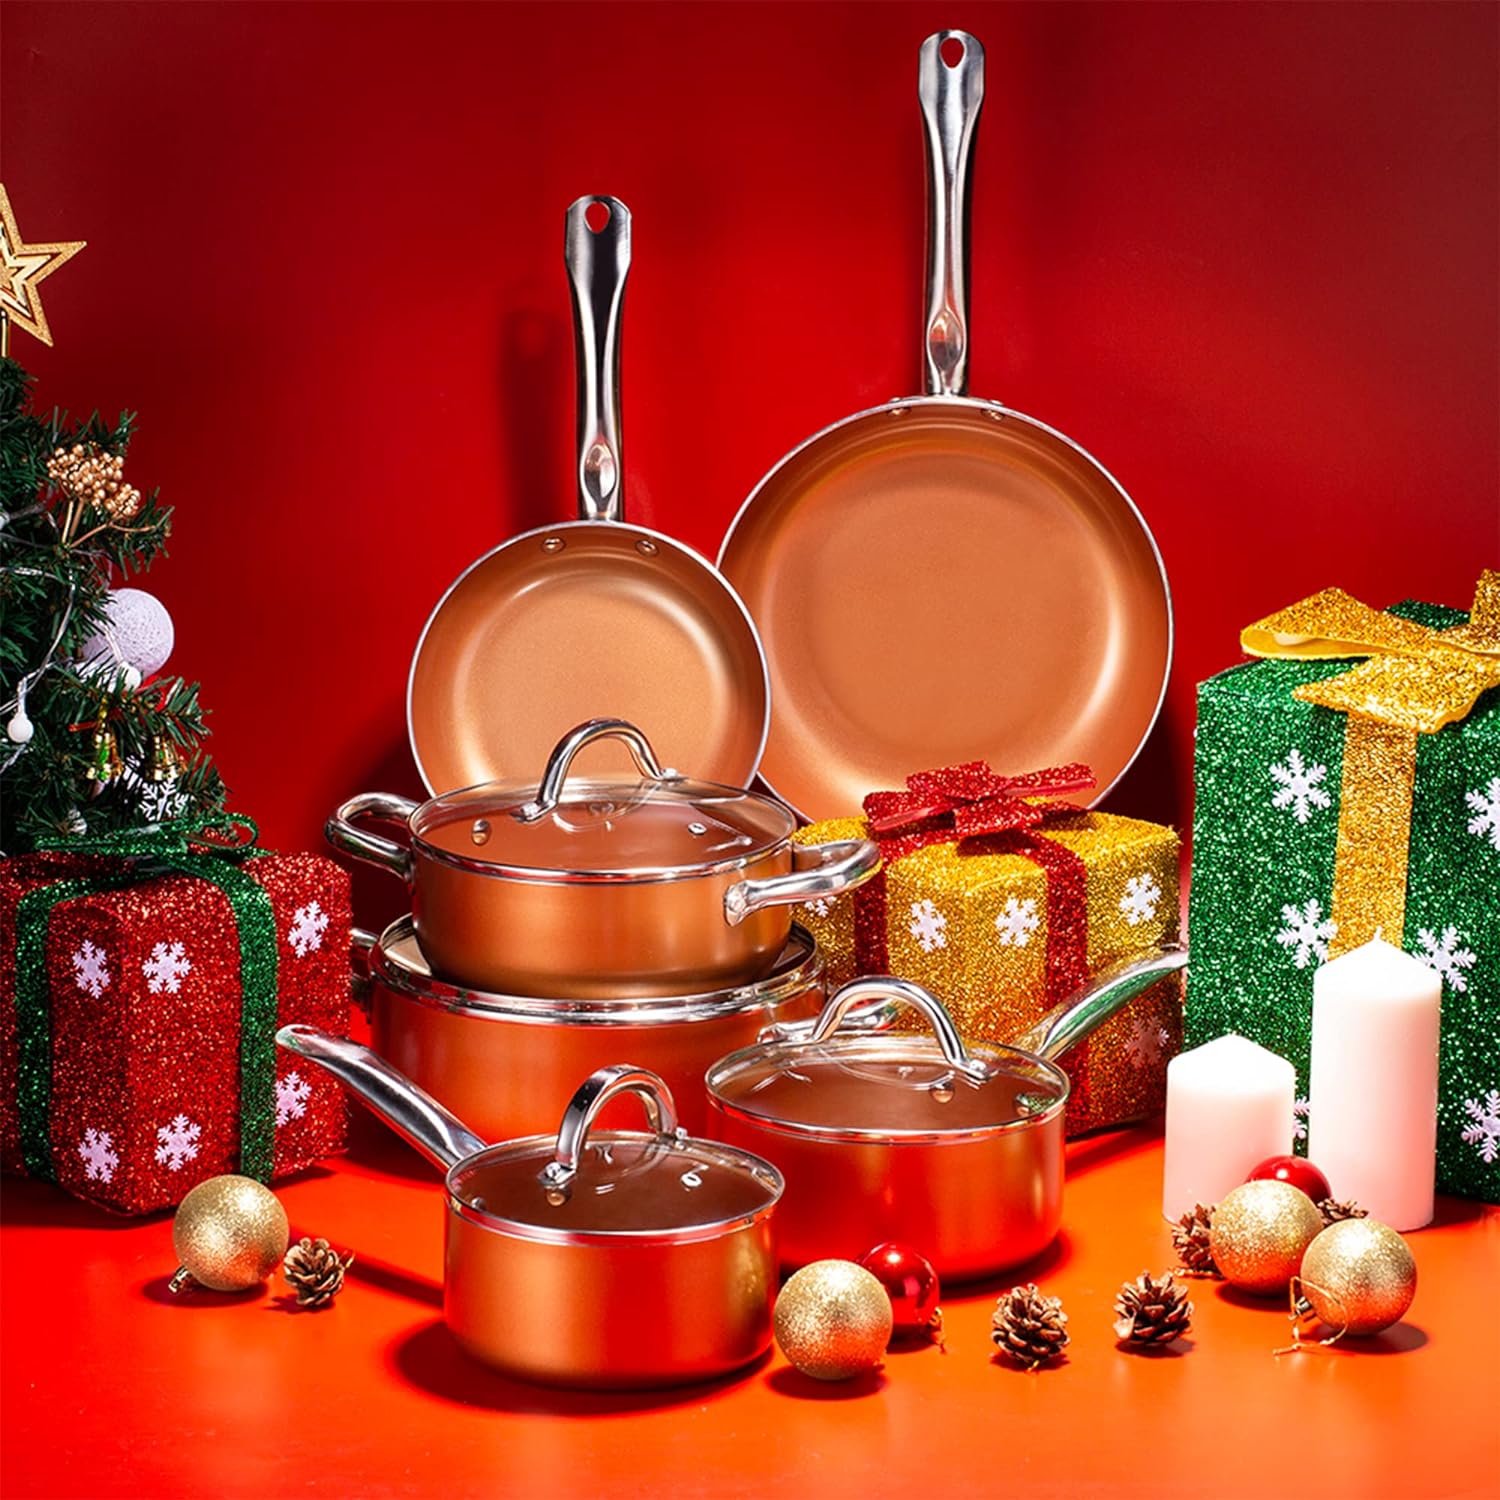 Christmas cookware deals